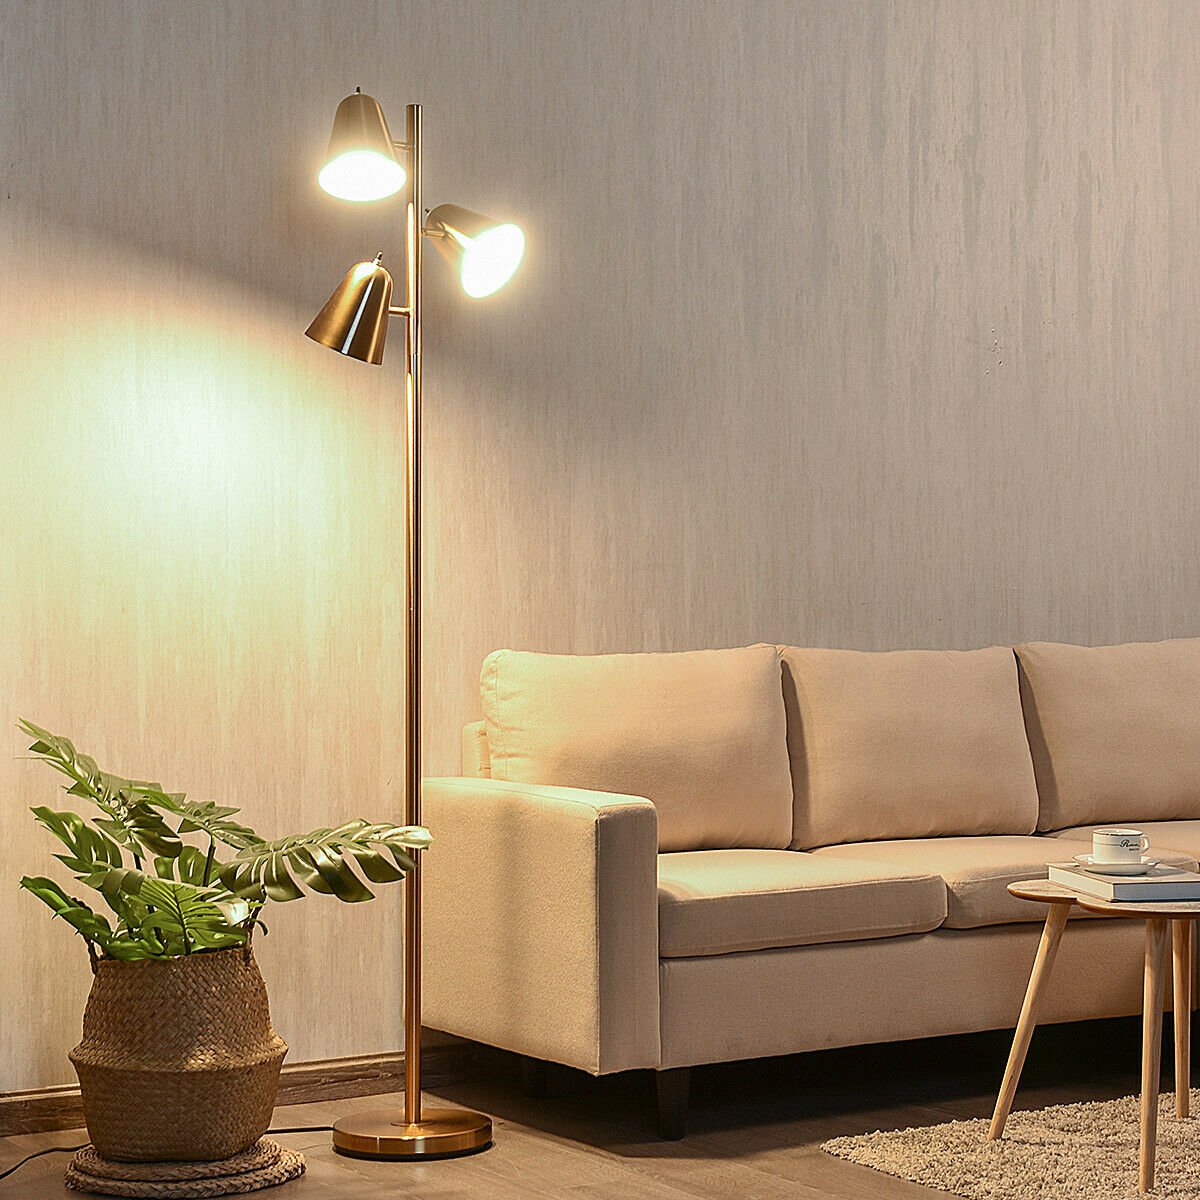 64 Inch 3-Light LED Floor Lamp Reading Light for Living Room Bedroom - Golden, Golden